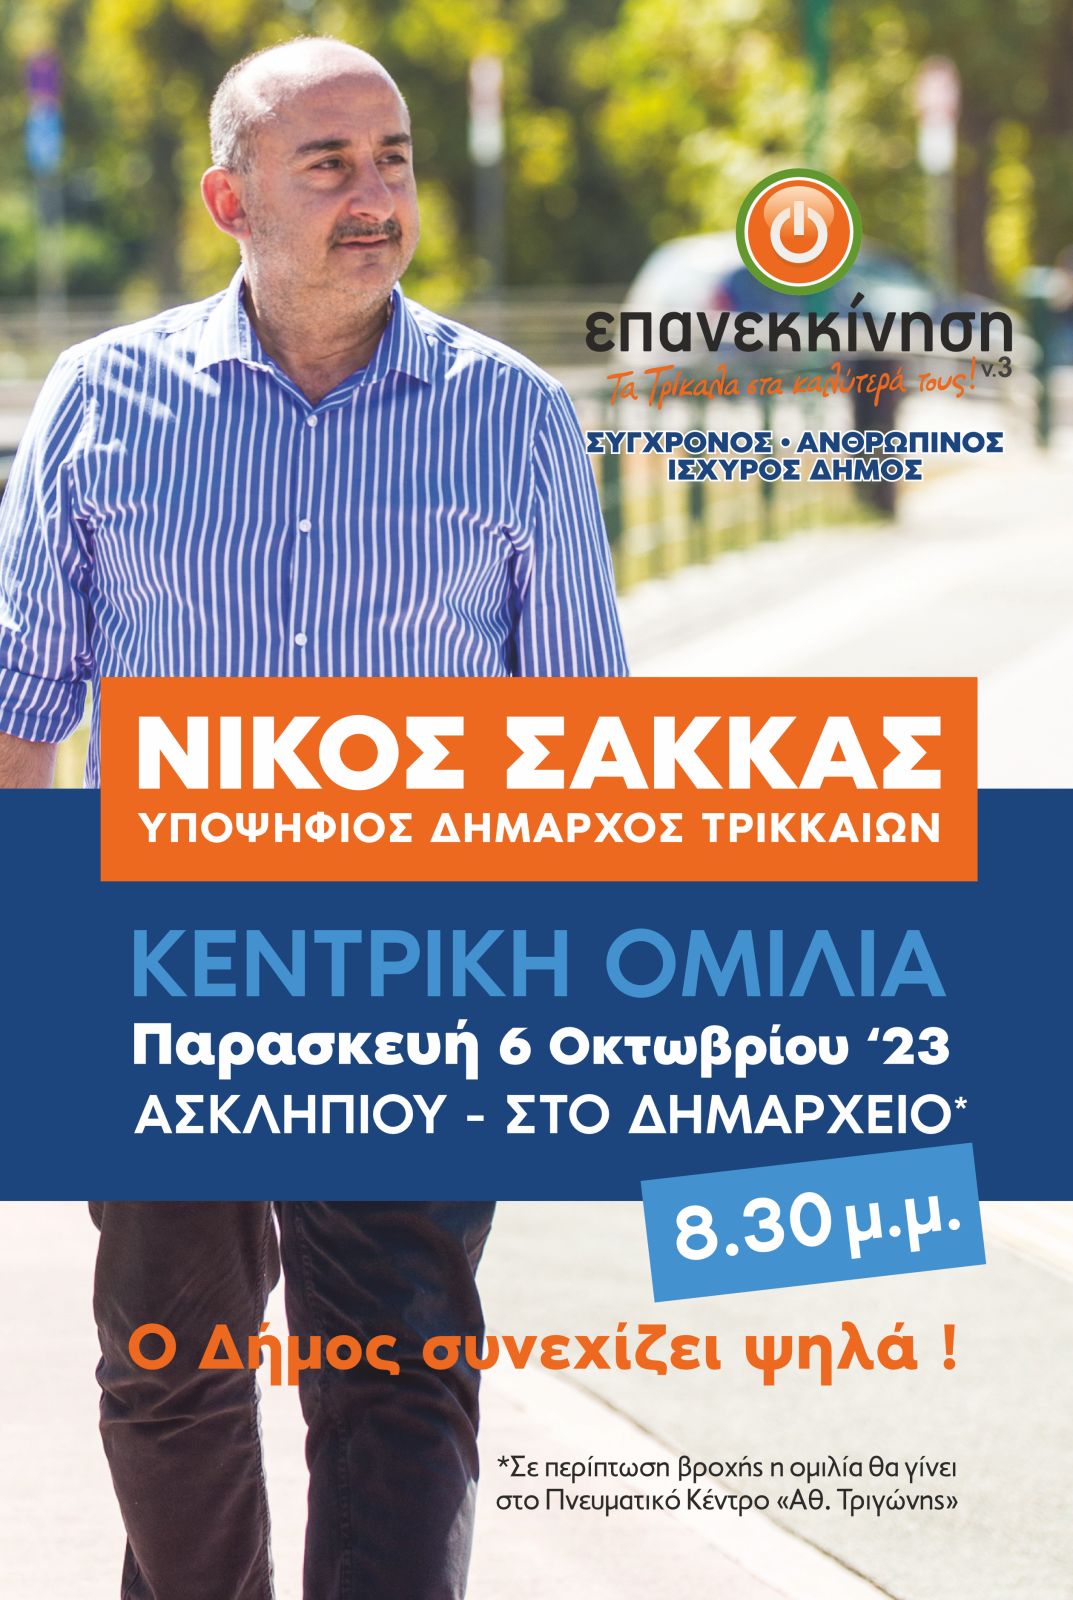 Νίκος Σακκάς - Κεντρική Ομιλία Παρασκευή 6 Οκτωβρίου 23